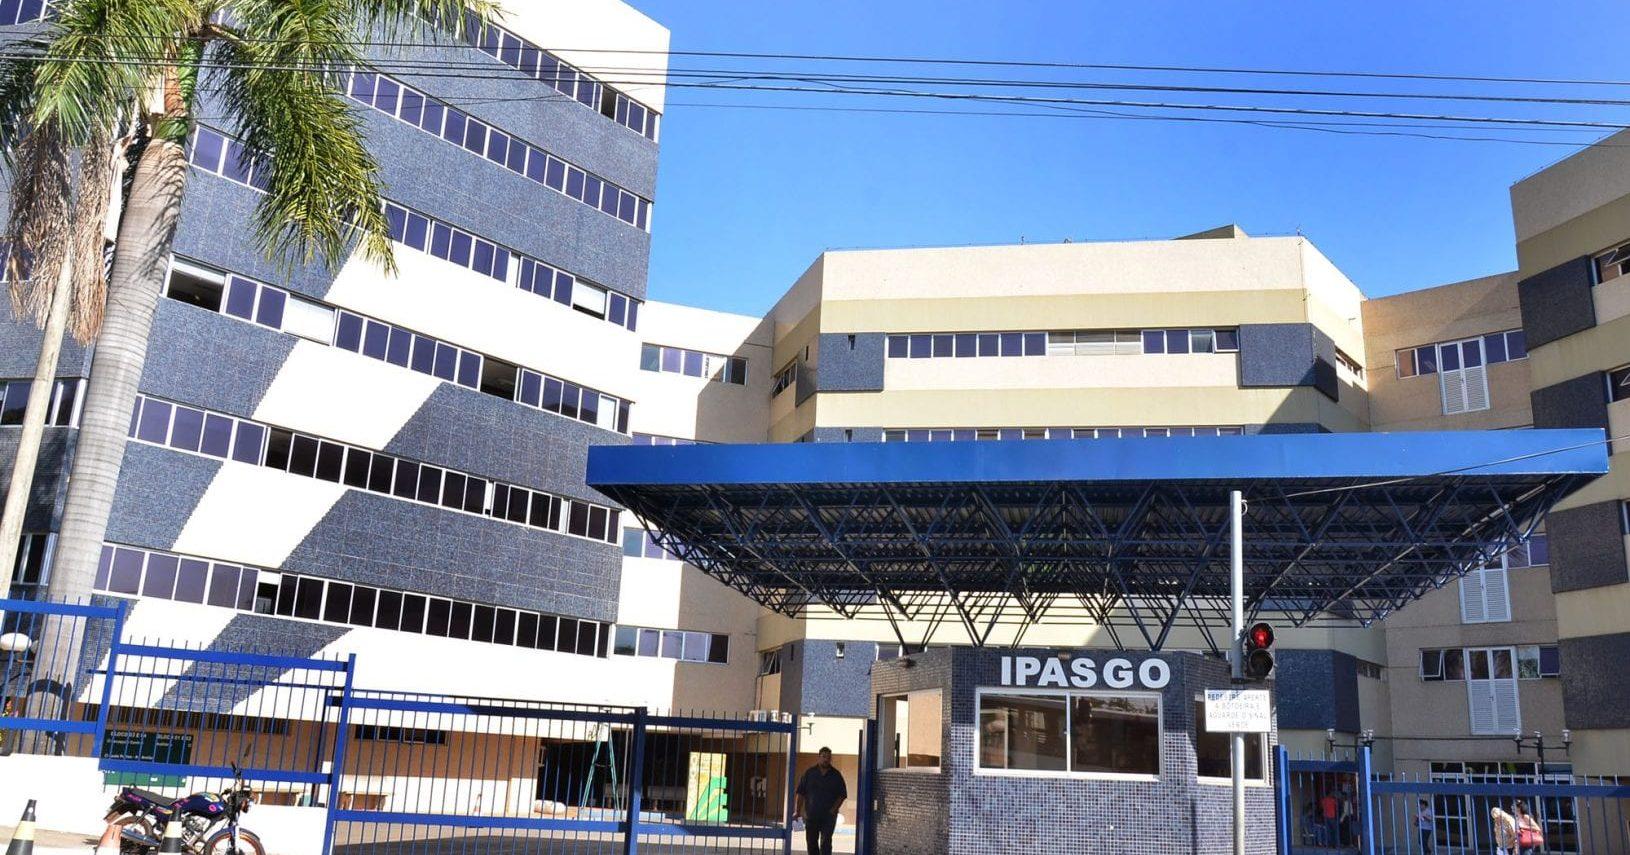 Ipasgo anuncia atendimento a domicilio para suspeitas de Covid-19